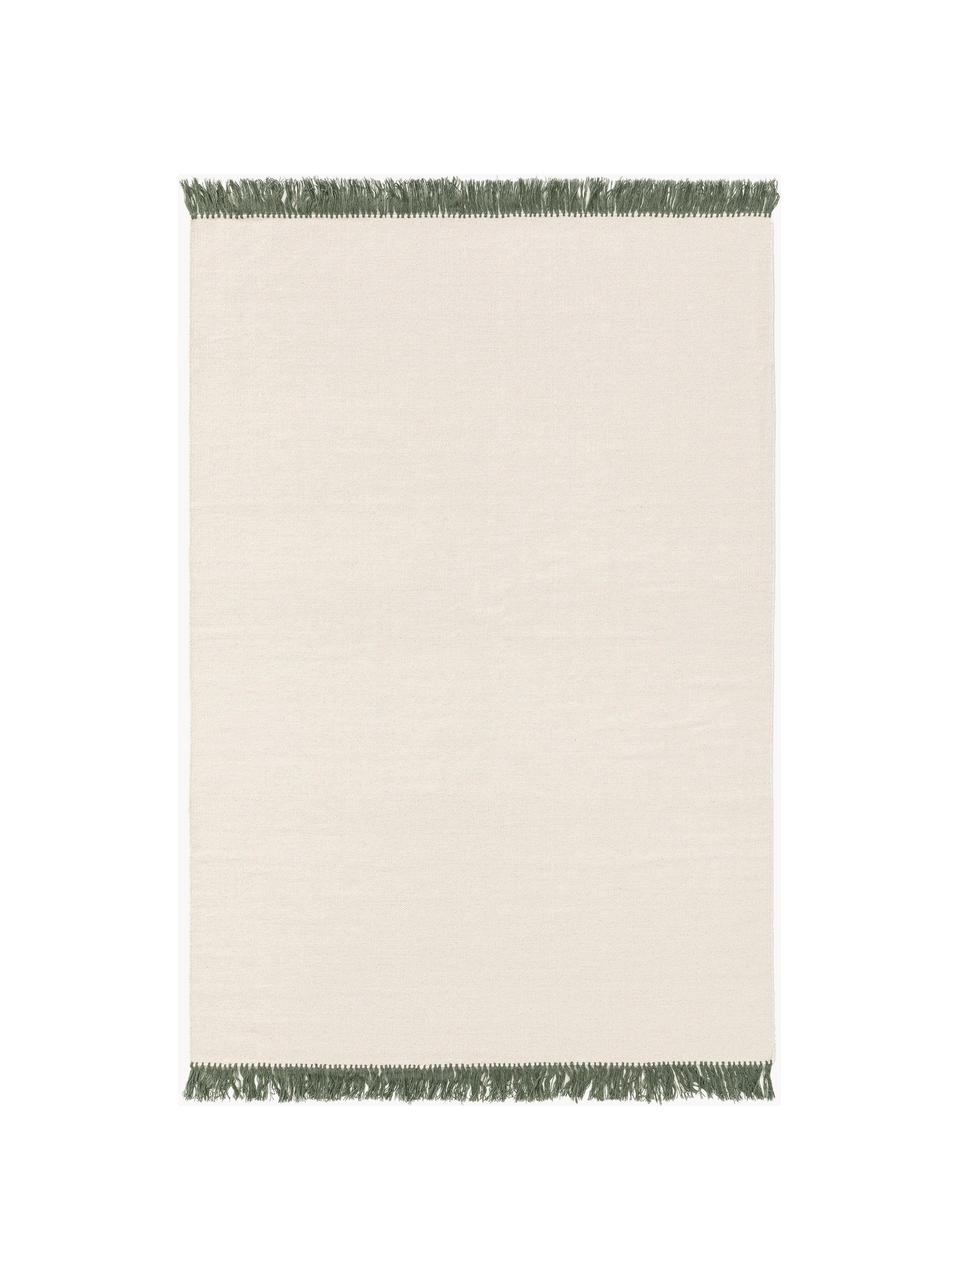 Ručně tkaný vlněný koberec s třásněmi Gitta, 90 % vlna, 10 % bavlna

V prvních týdnech používání vlněných koberců se může objevit charakteristický jev uvolňování vláken, který po několika týdnech používání zmizí., Tlumeně bílá, tmavě zelená, Š 80 cm, D 150 cm (velikost XS)